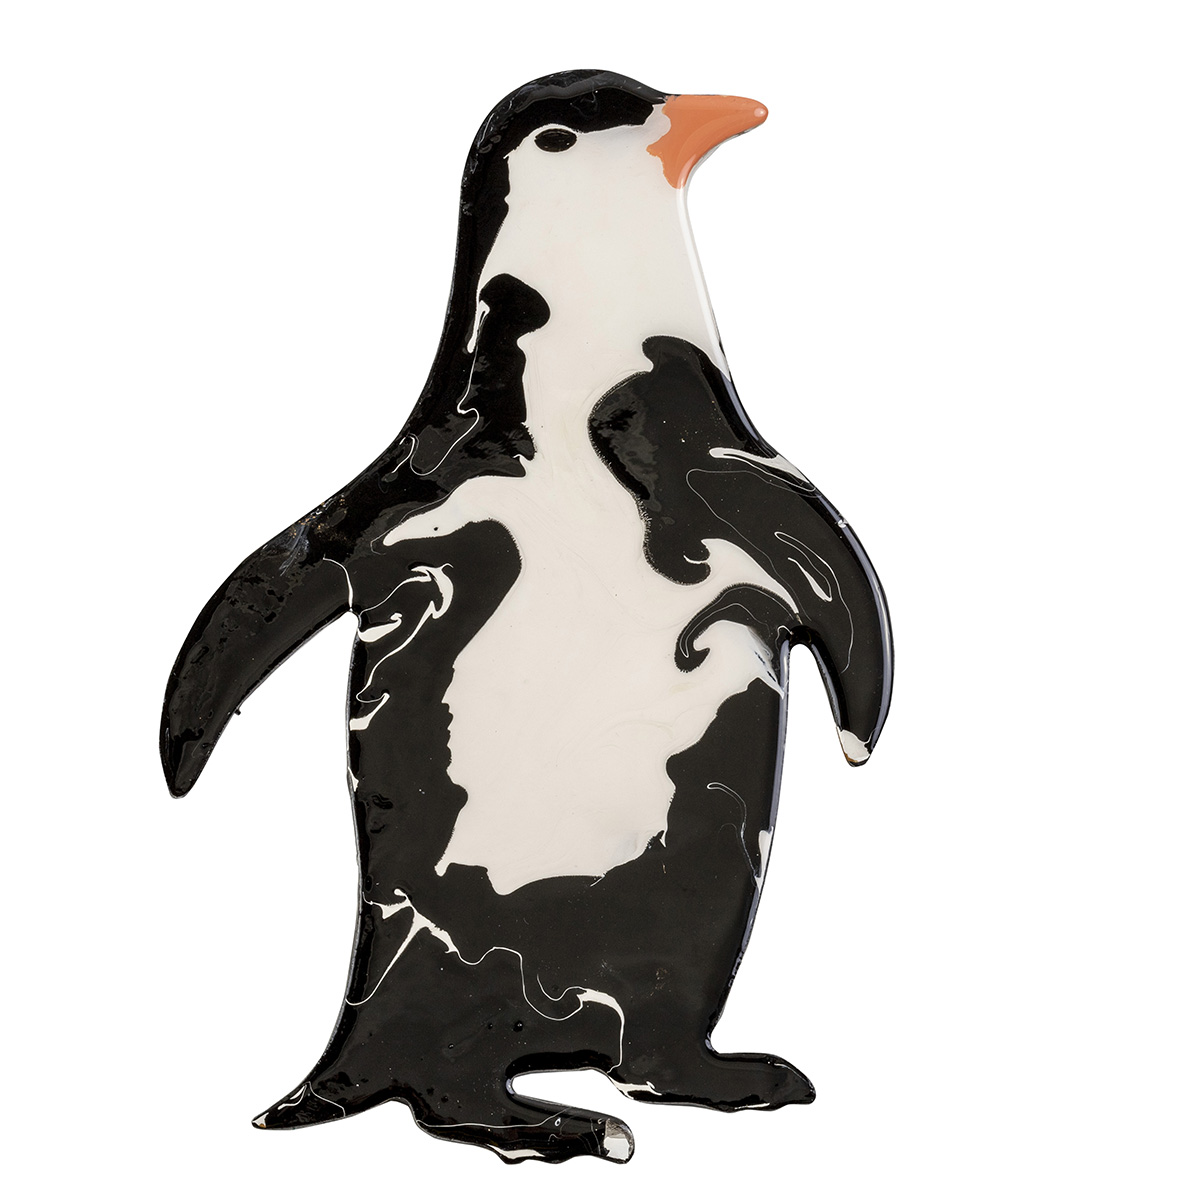 Pirate's Treasure Resin Art Penguin